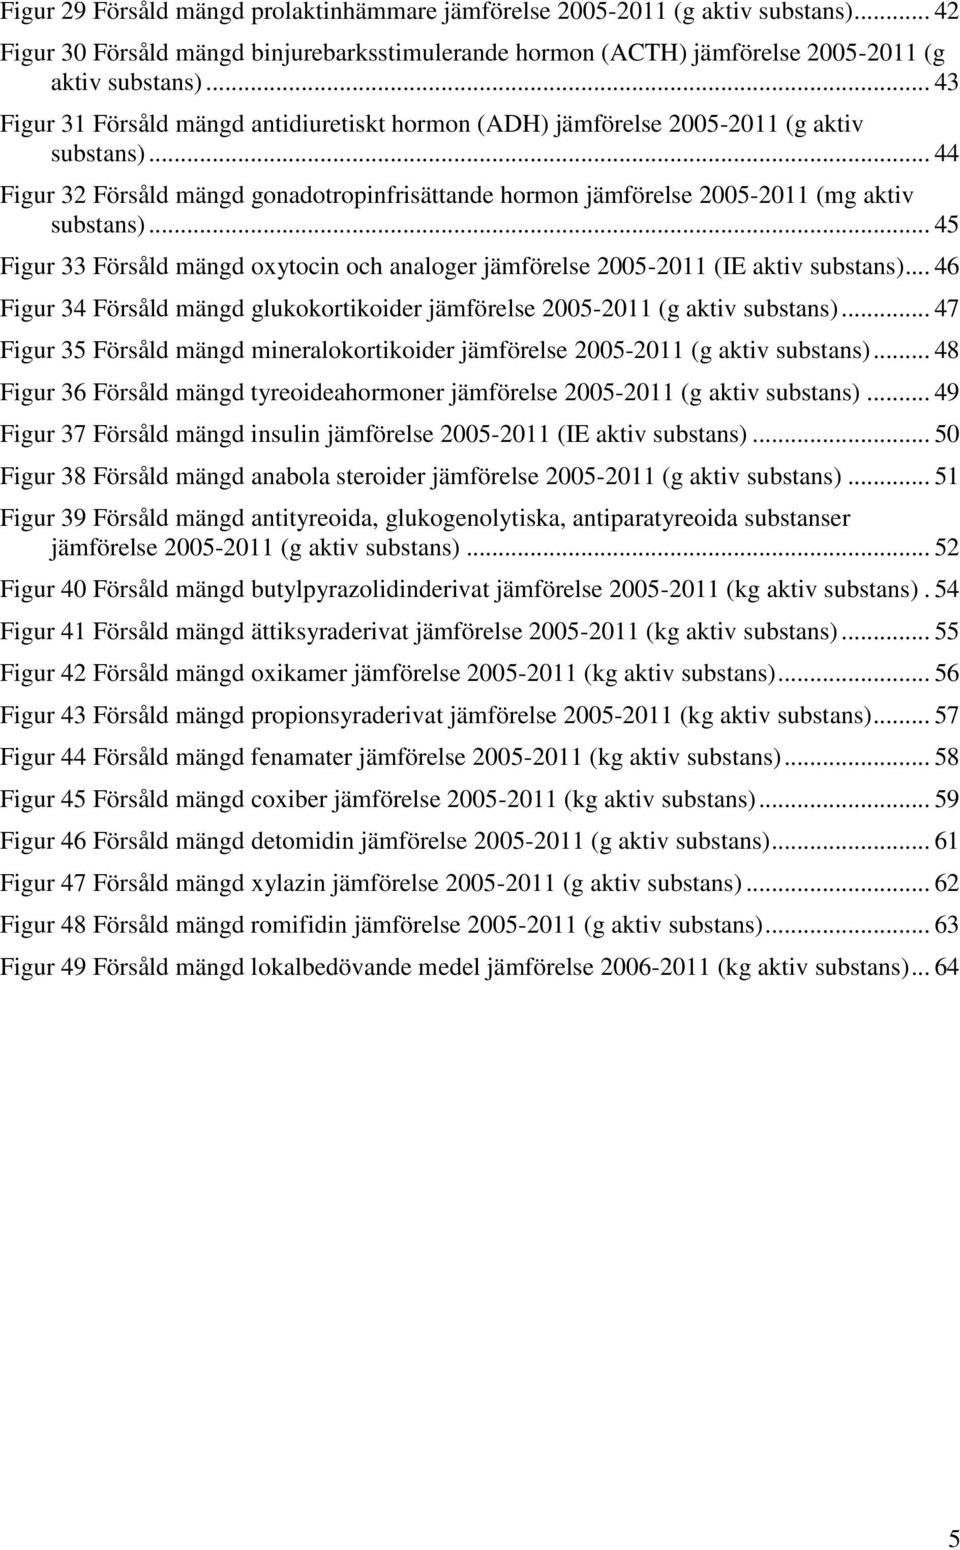 .. 45 Figur 33 Försåld mängd oxytocin och analoger jämförelse 2005-2011 (IE aktiv substans)... 46 Figur 34 Försåld mängd glukokortikoider jämförelse 2005-2011 (g aktiv substans).